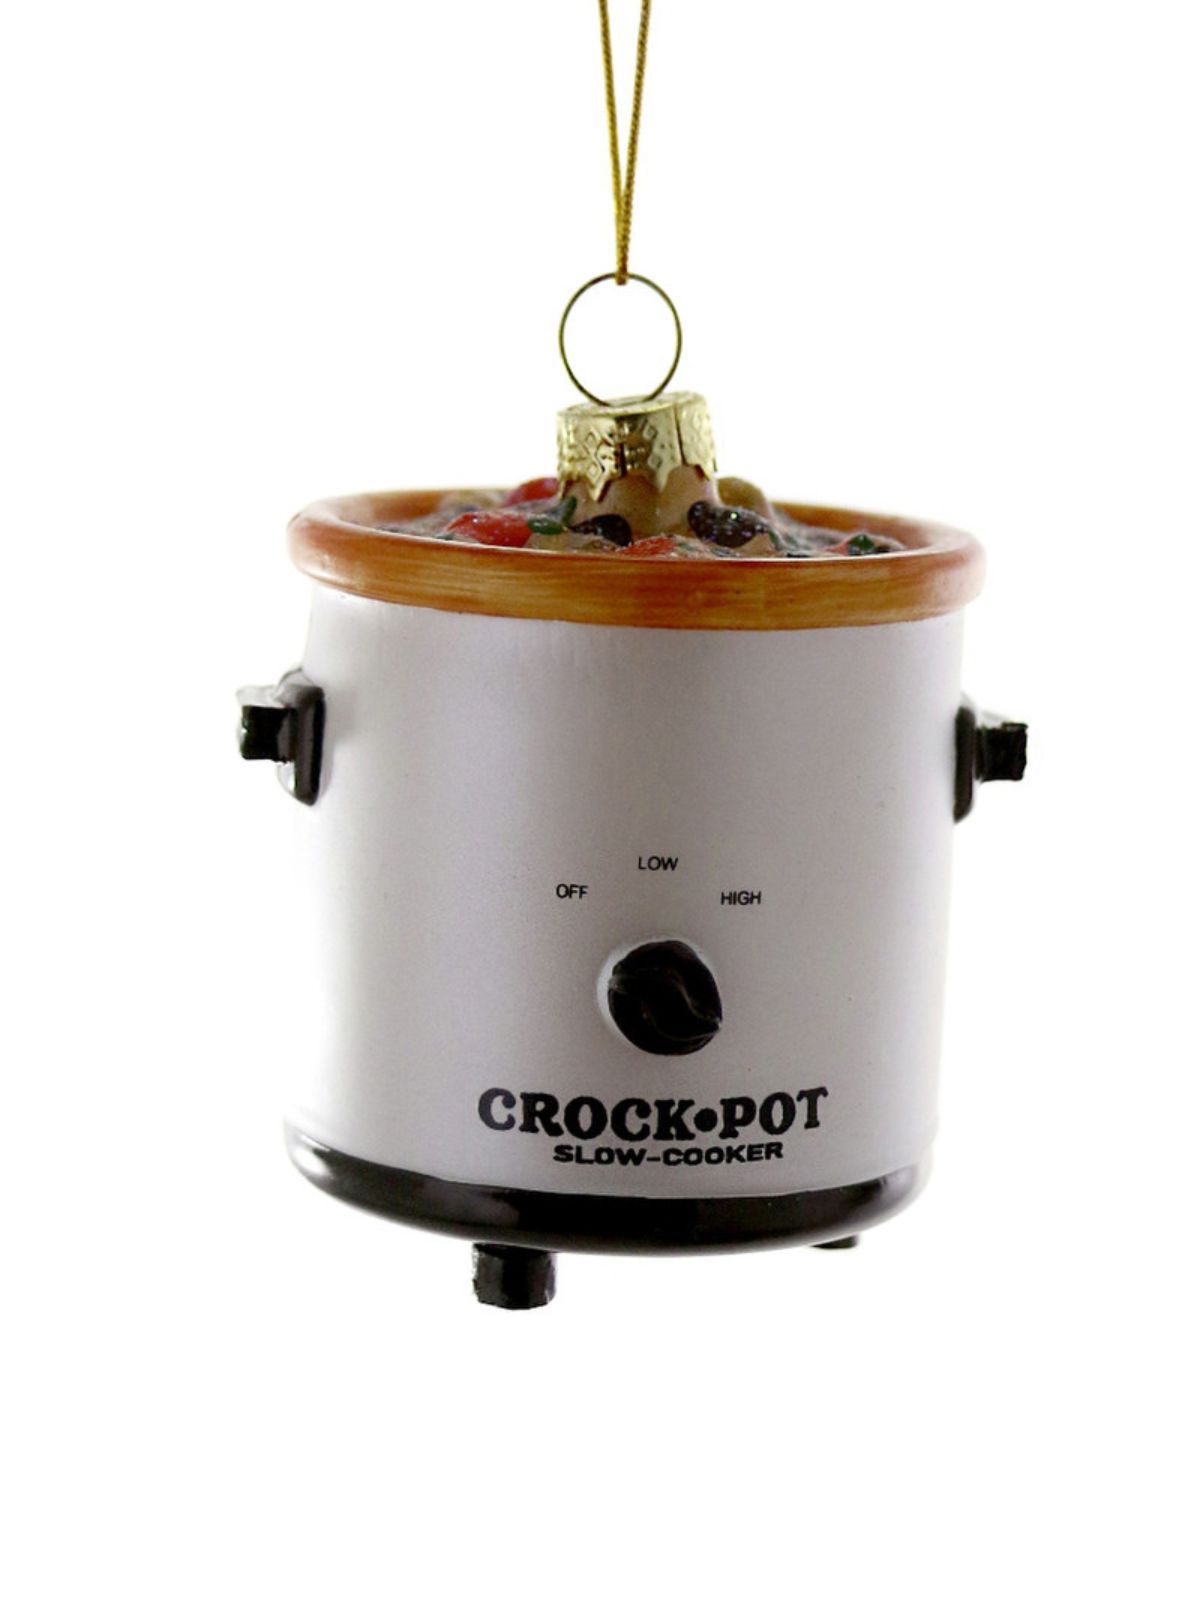 Crock Pot Ornament